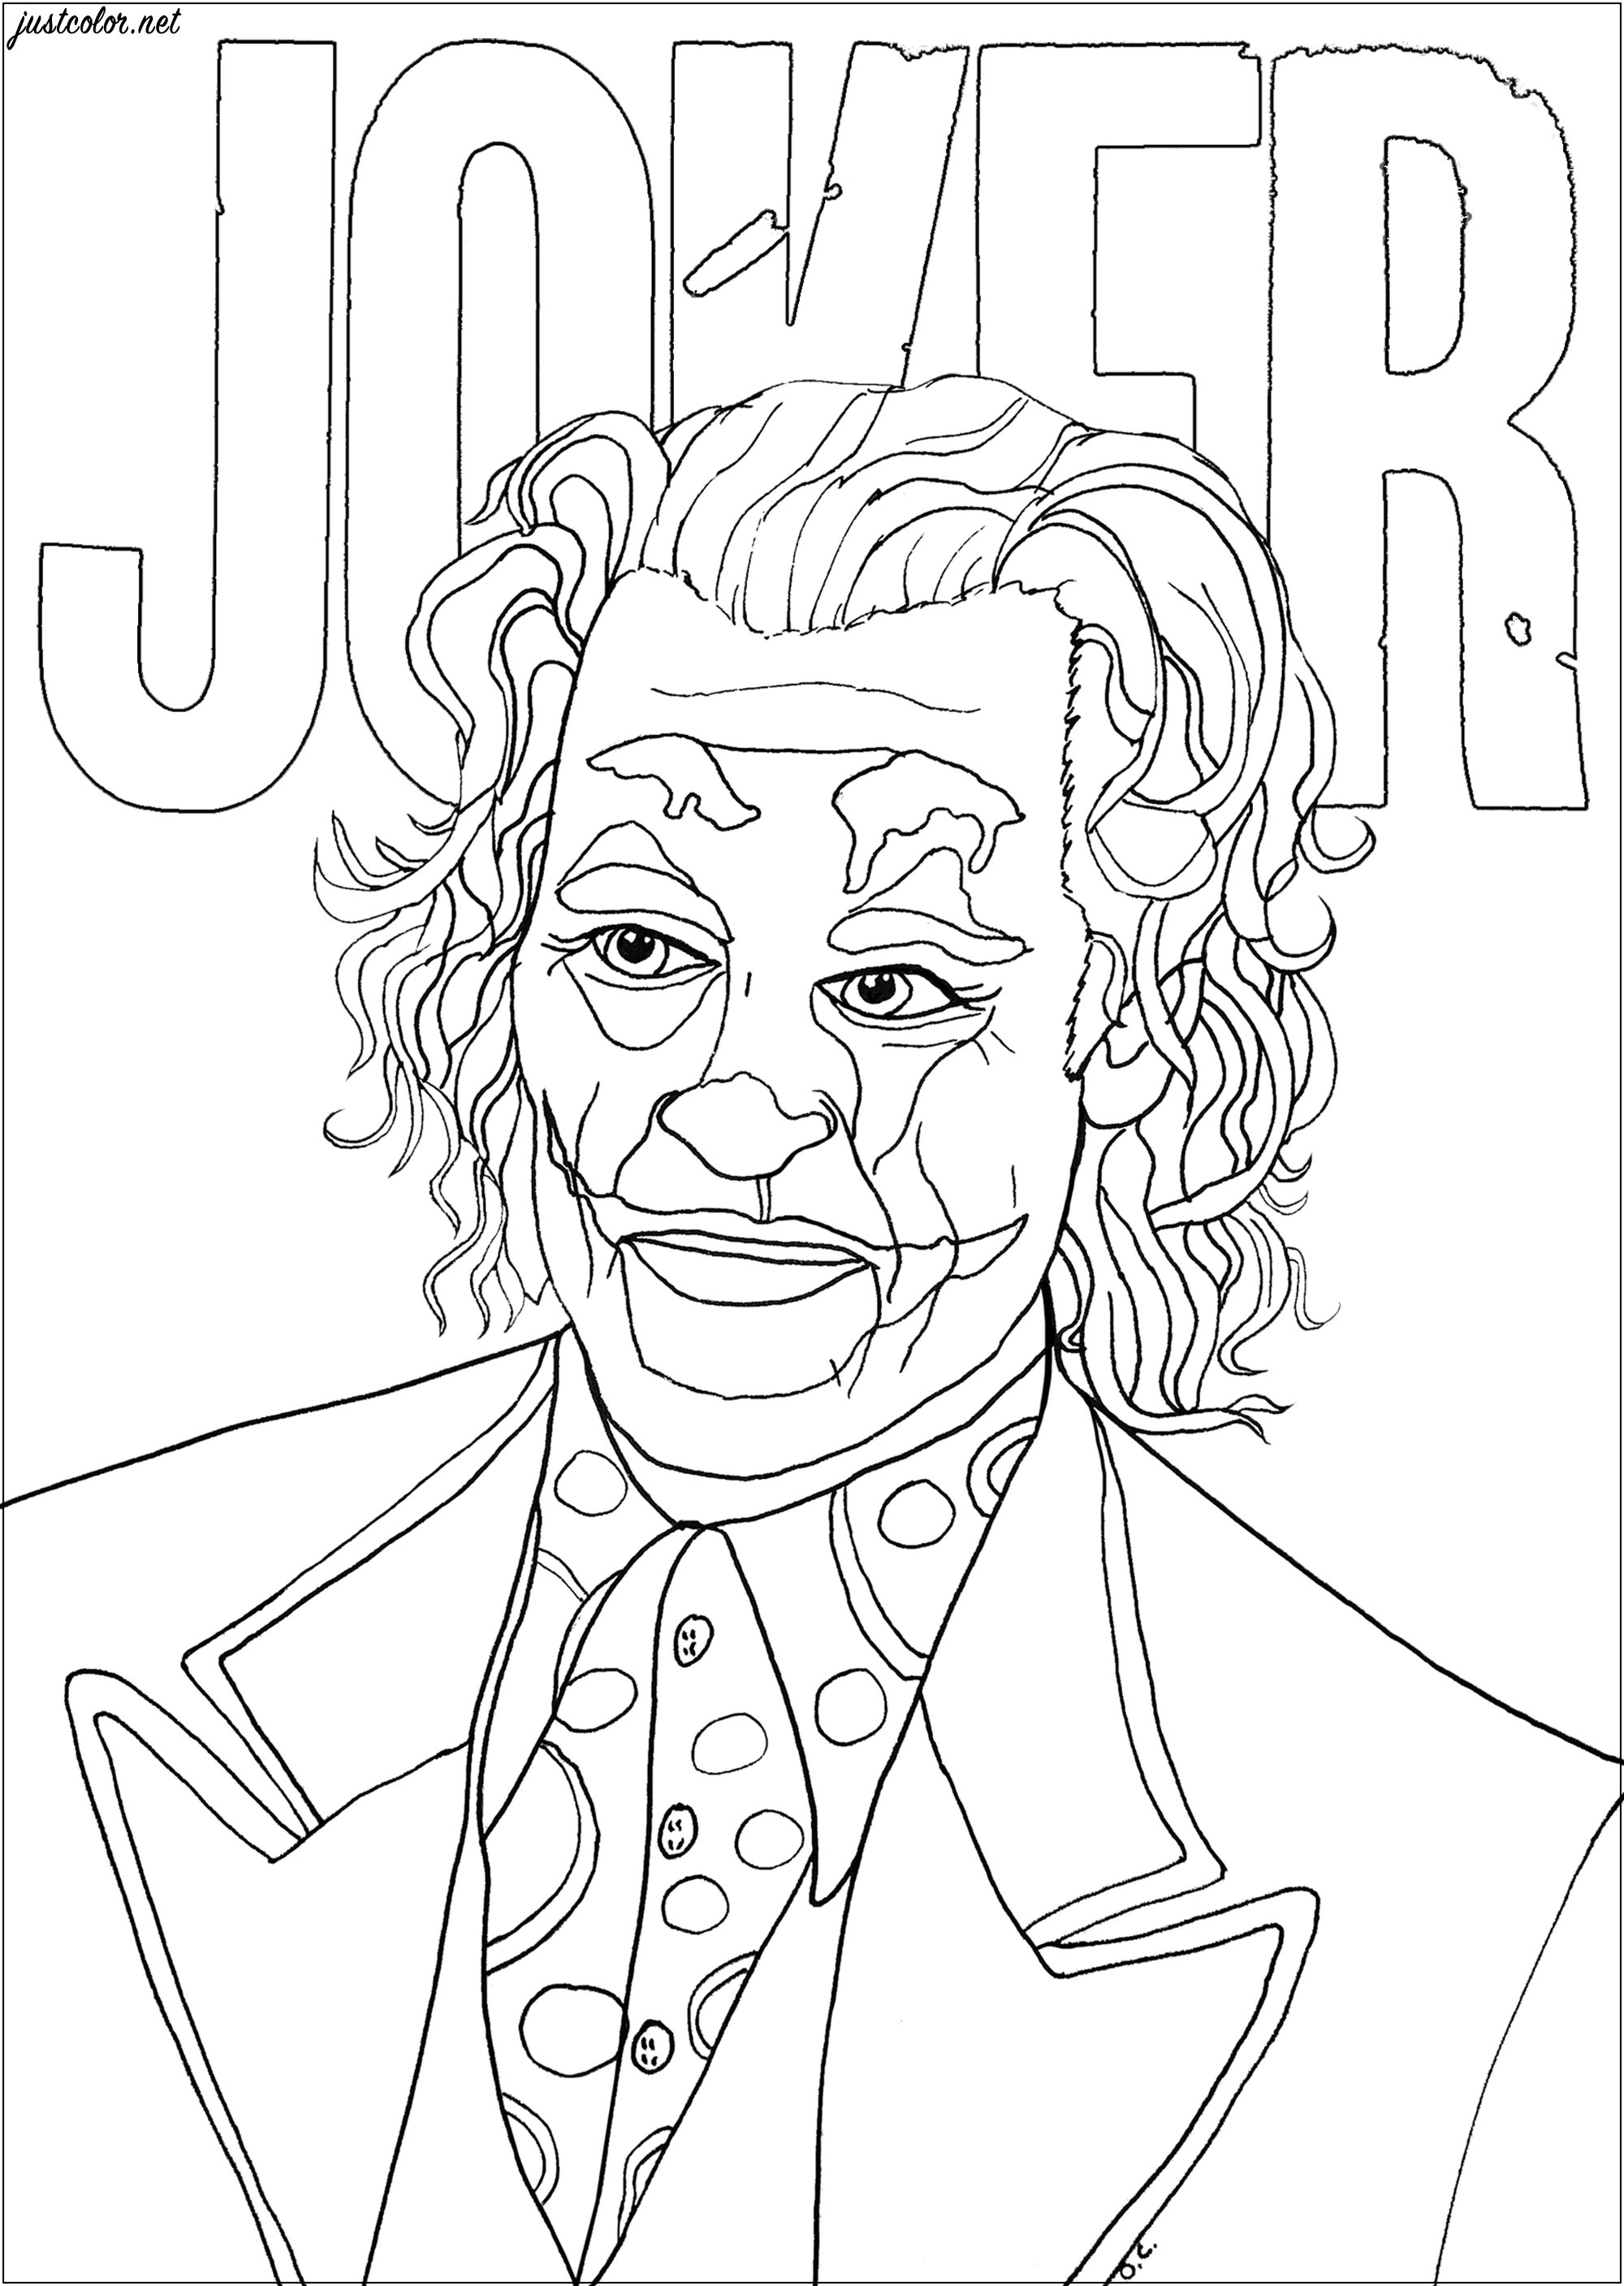 Coloriage inspiré par le Joker, dans sa version 2019, interprété par Joaquin Phoenix dans le film du même nom